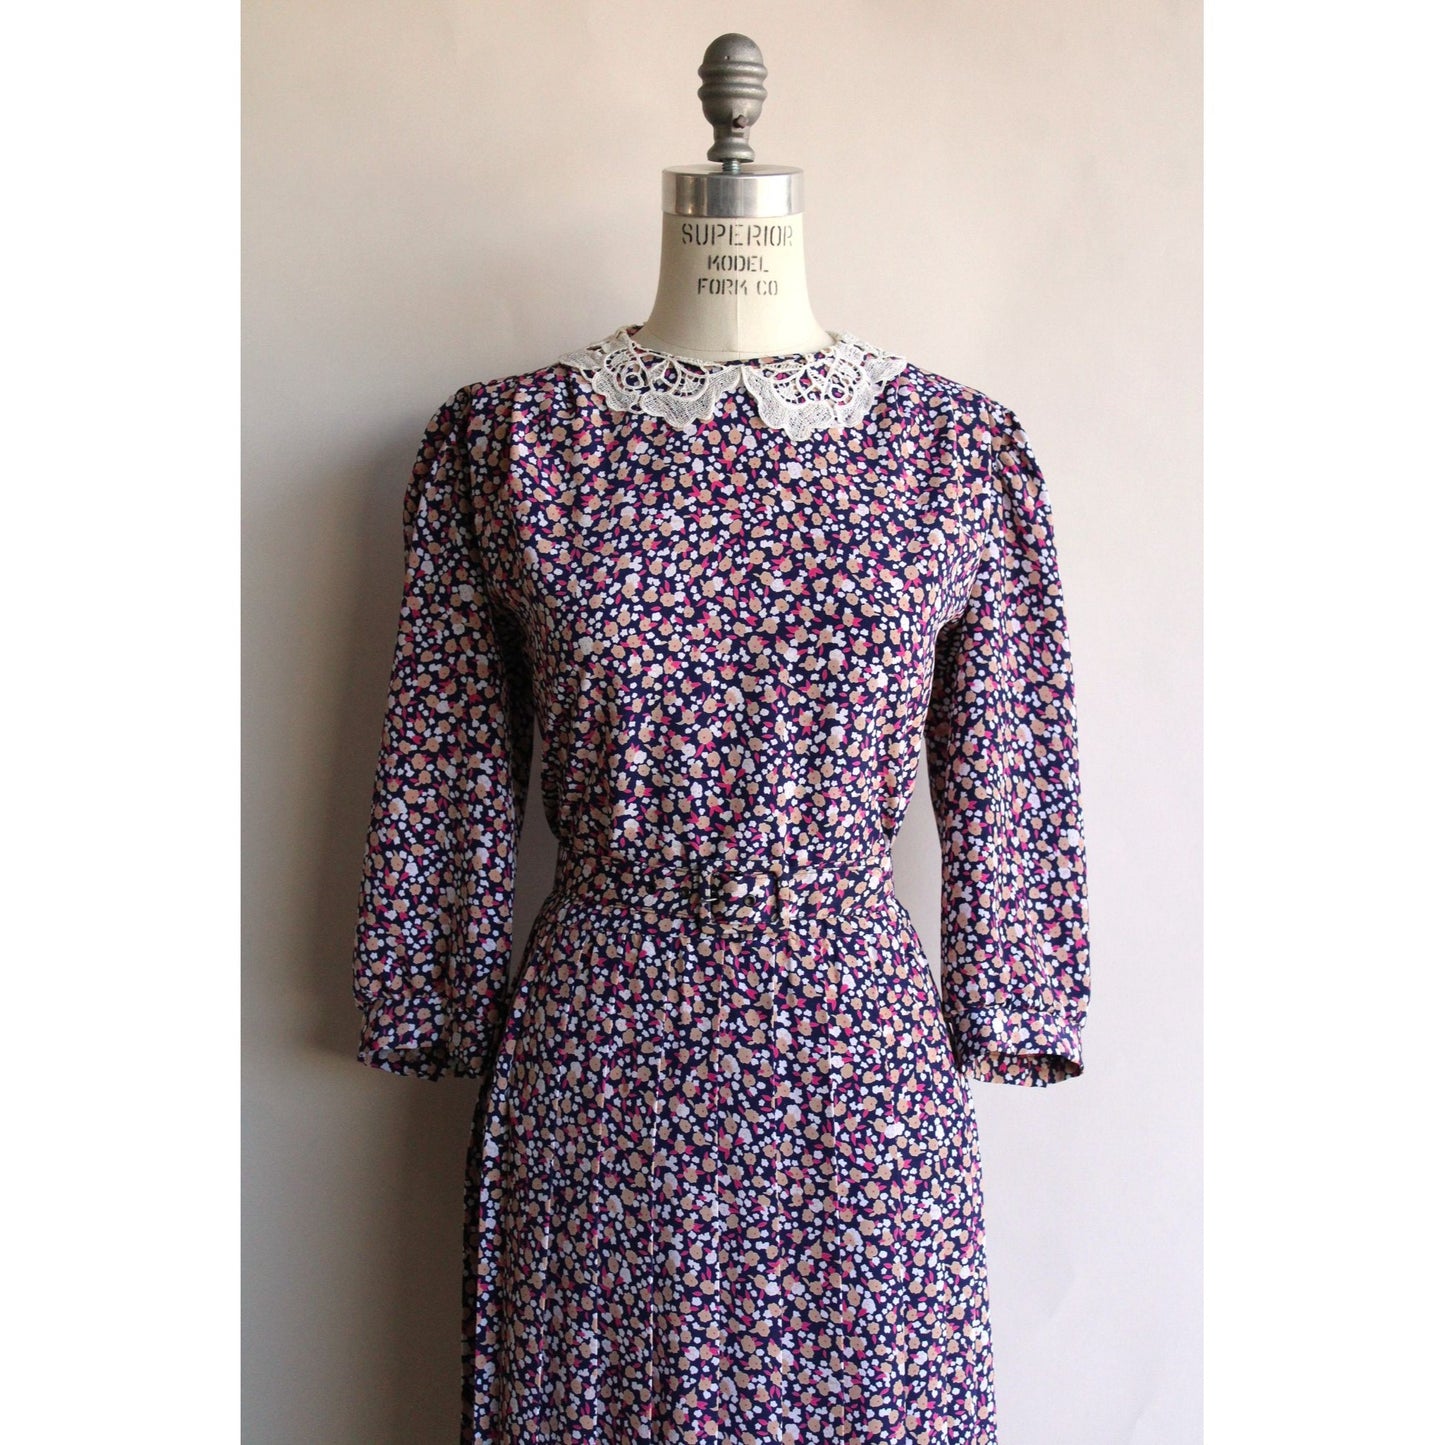 Vintage 1980's Lisa II Floral Print Dress with Belt